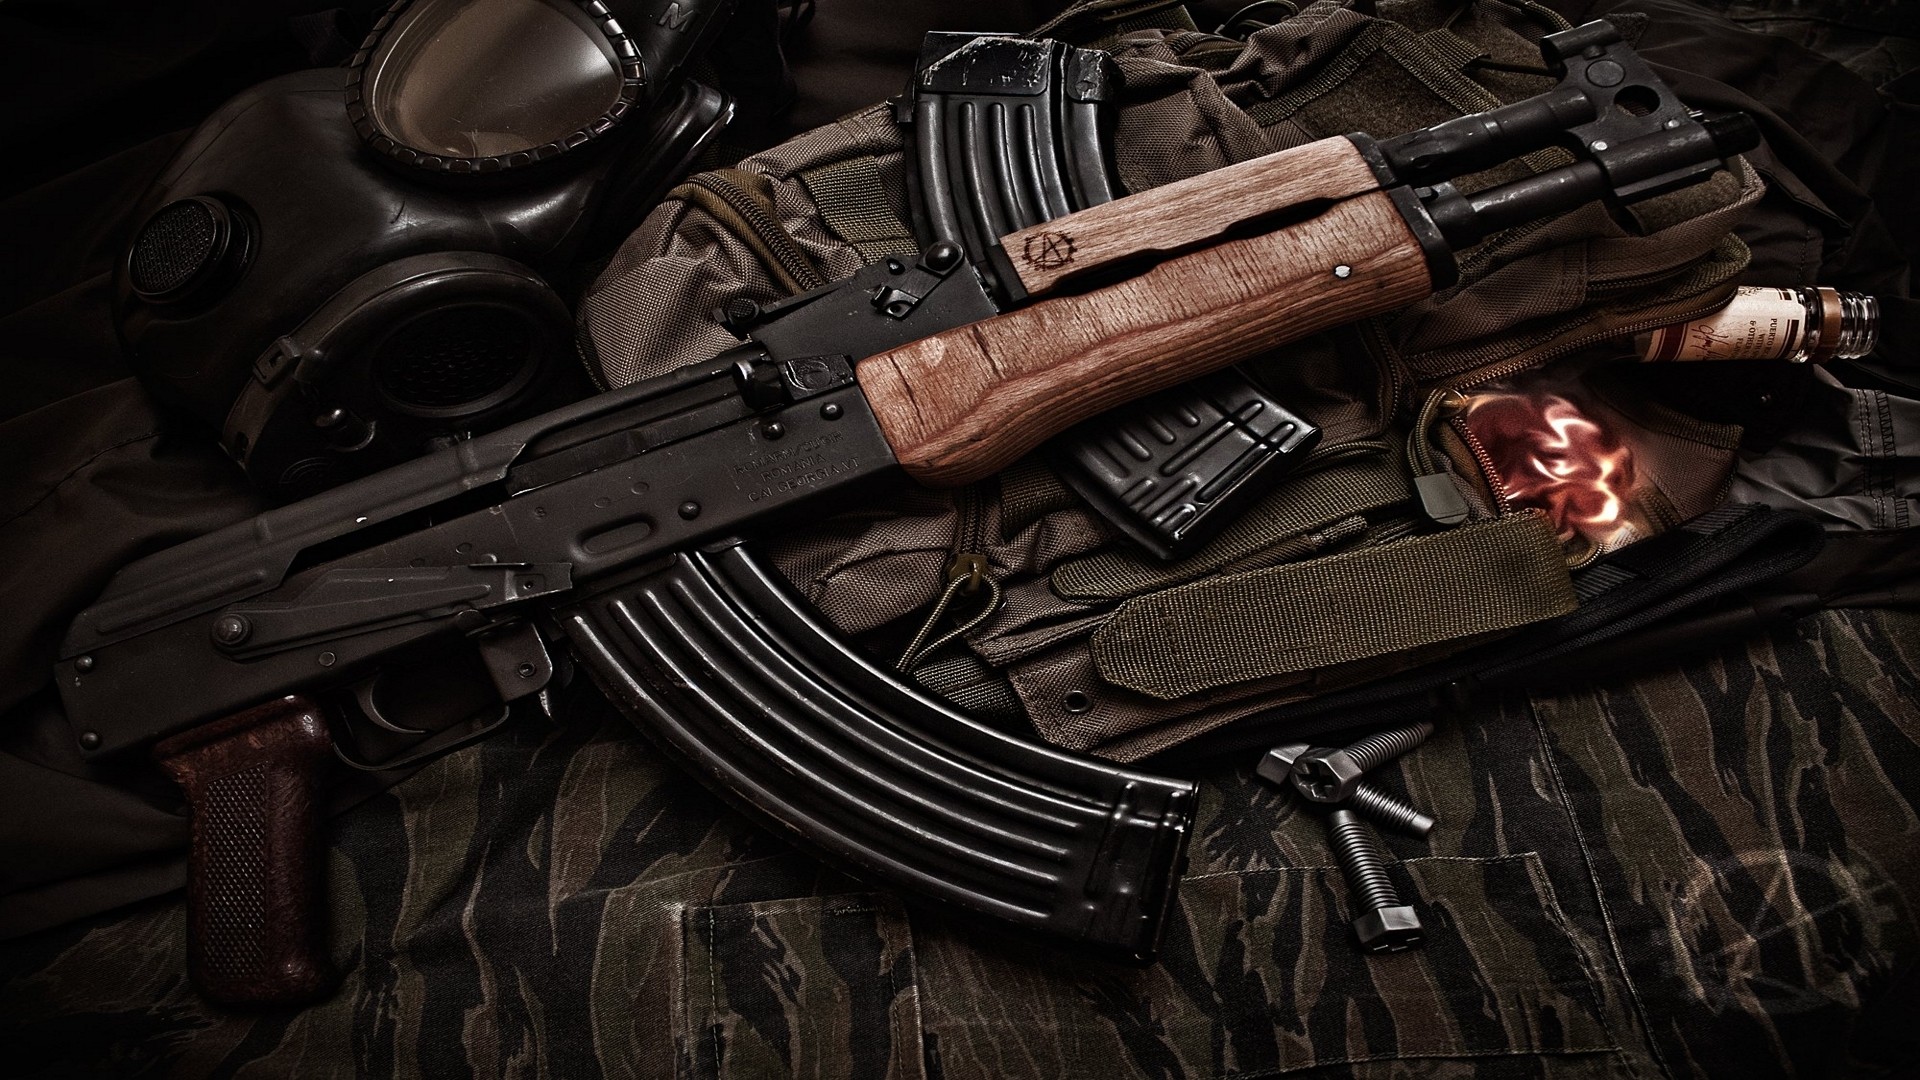 General 1920x1080 vodka gas masks AK-47 Draco S.T.A.L.K.E.R. camouflage bolts AK-47 assault rifle Russian/Soviet firearms gun